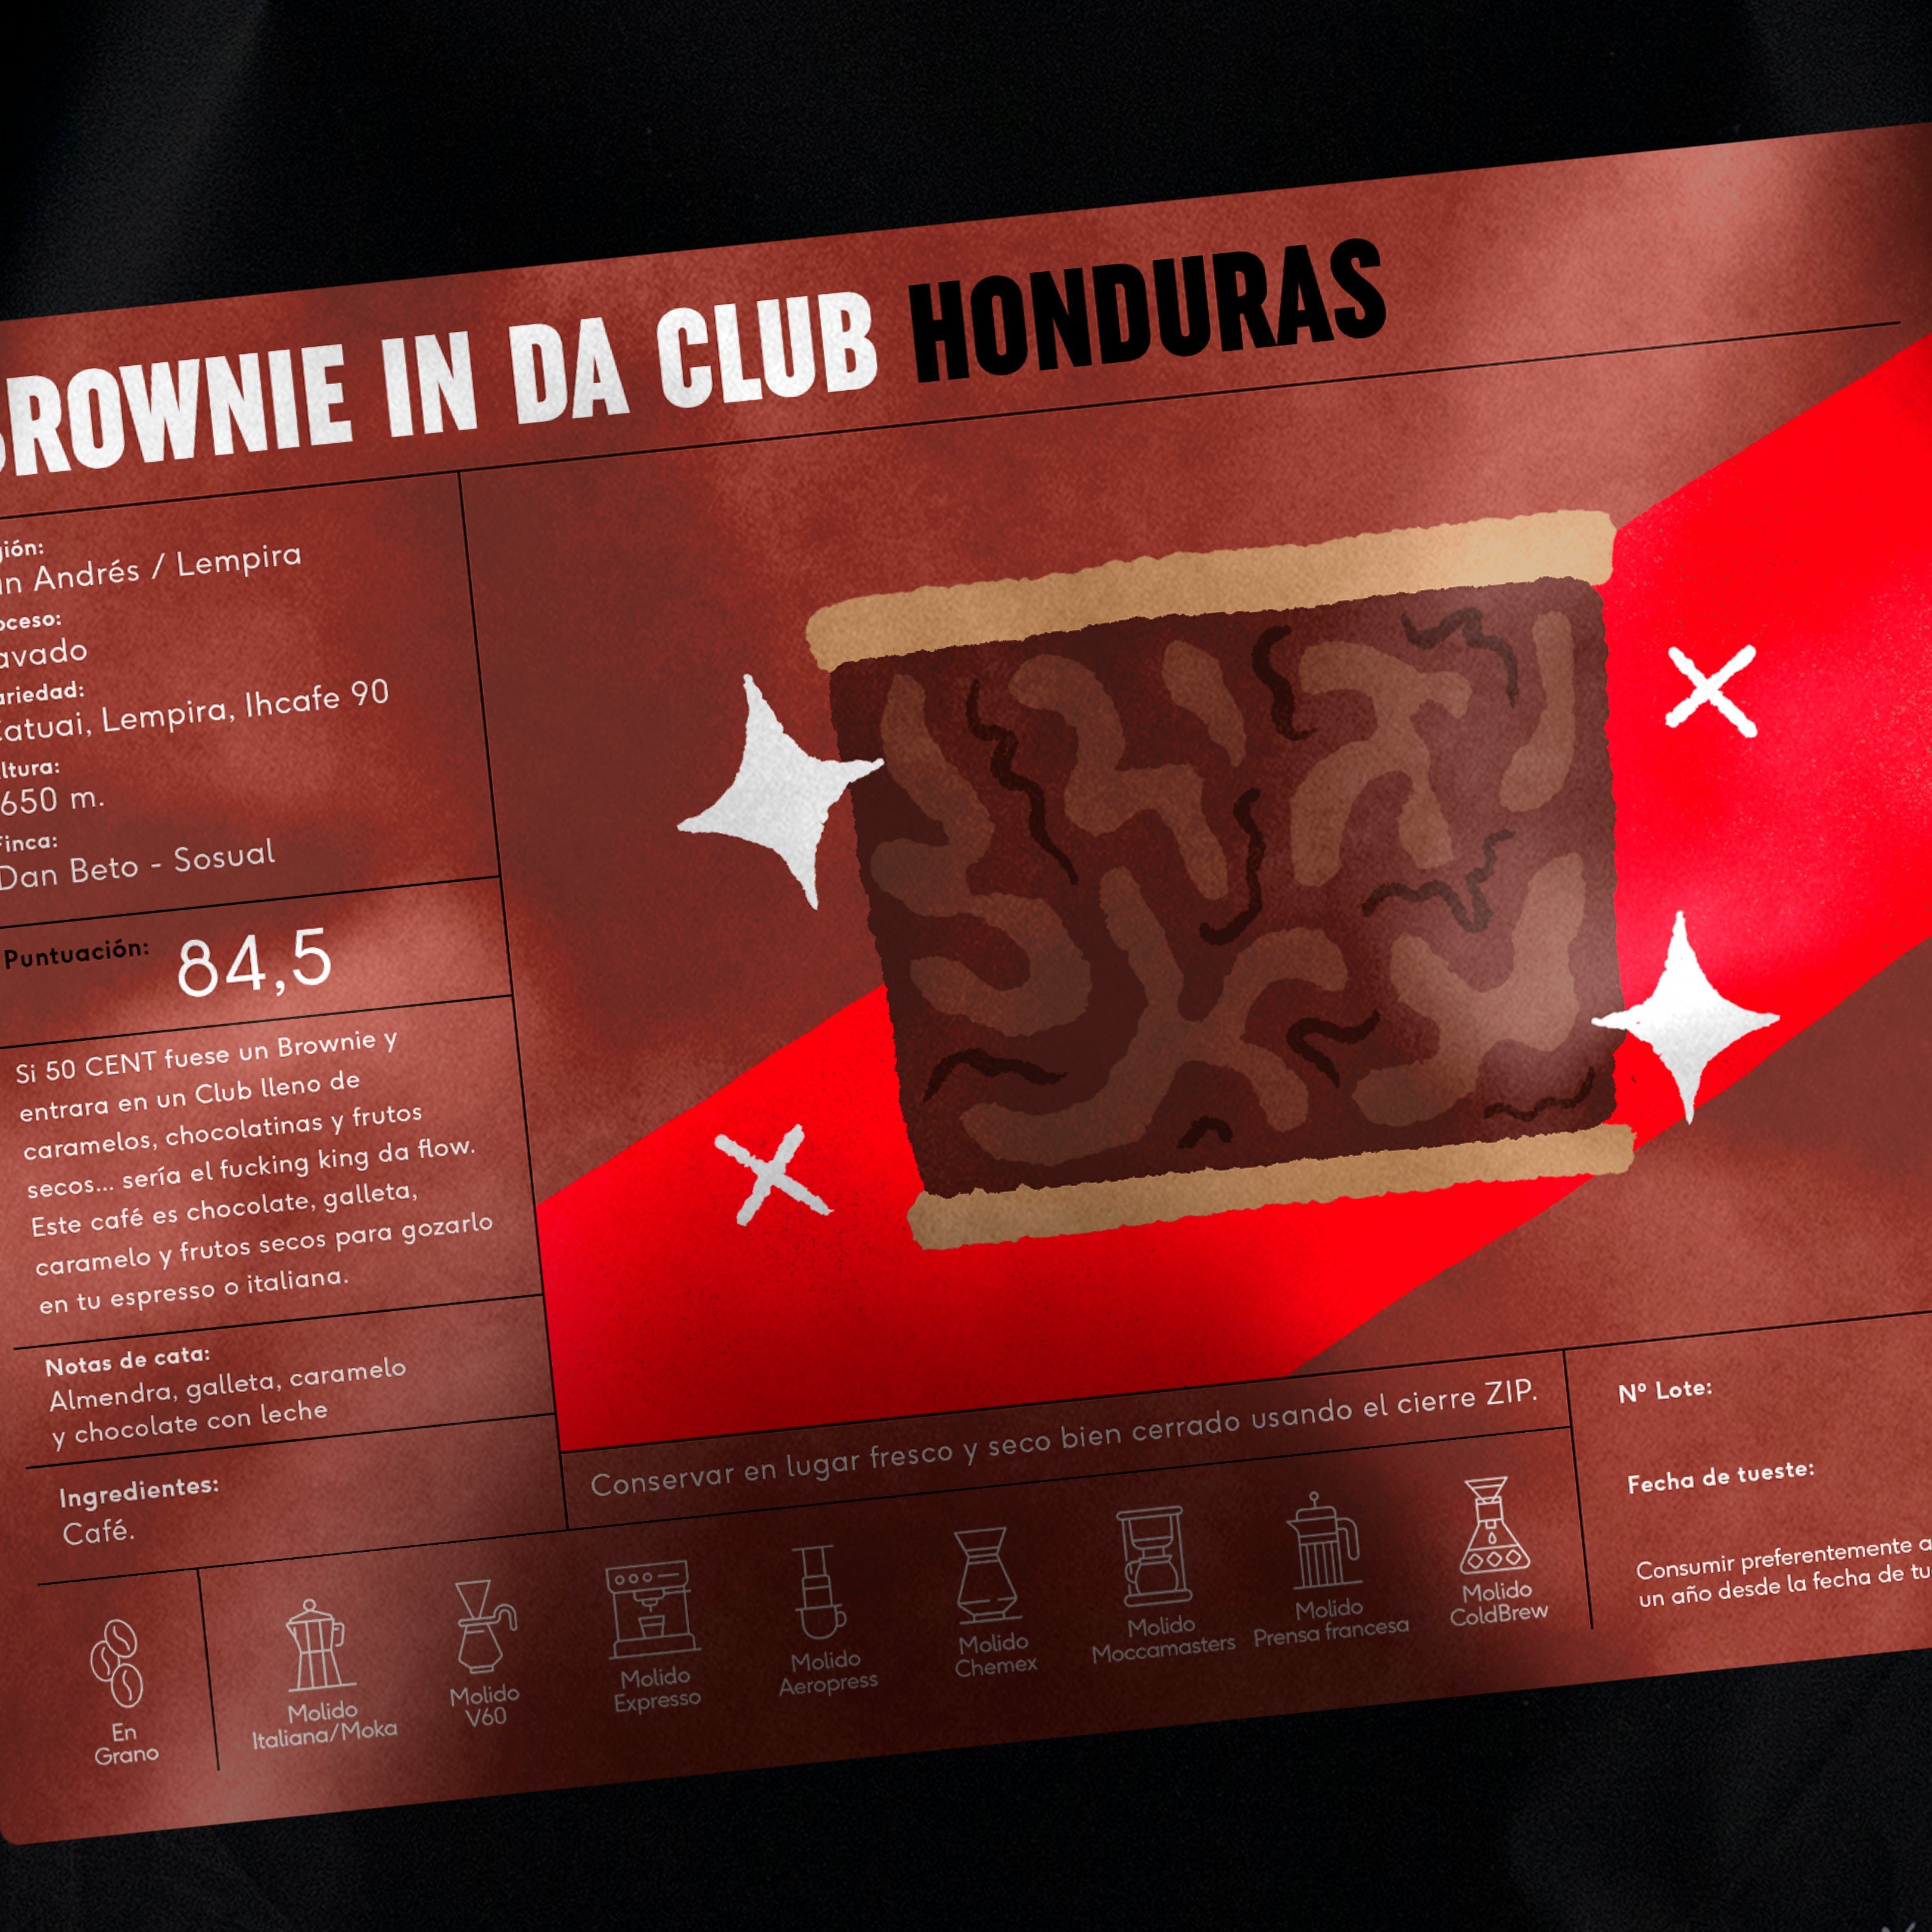 Brownie in Da Club de Honduras